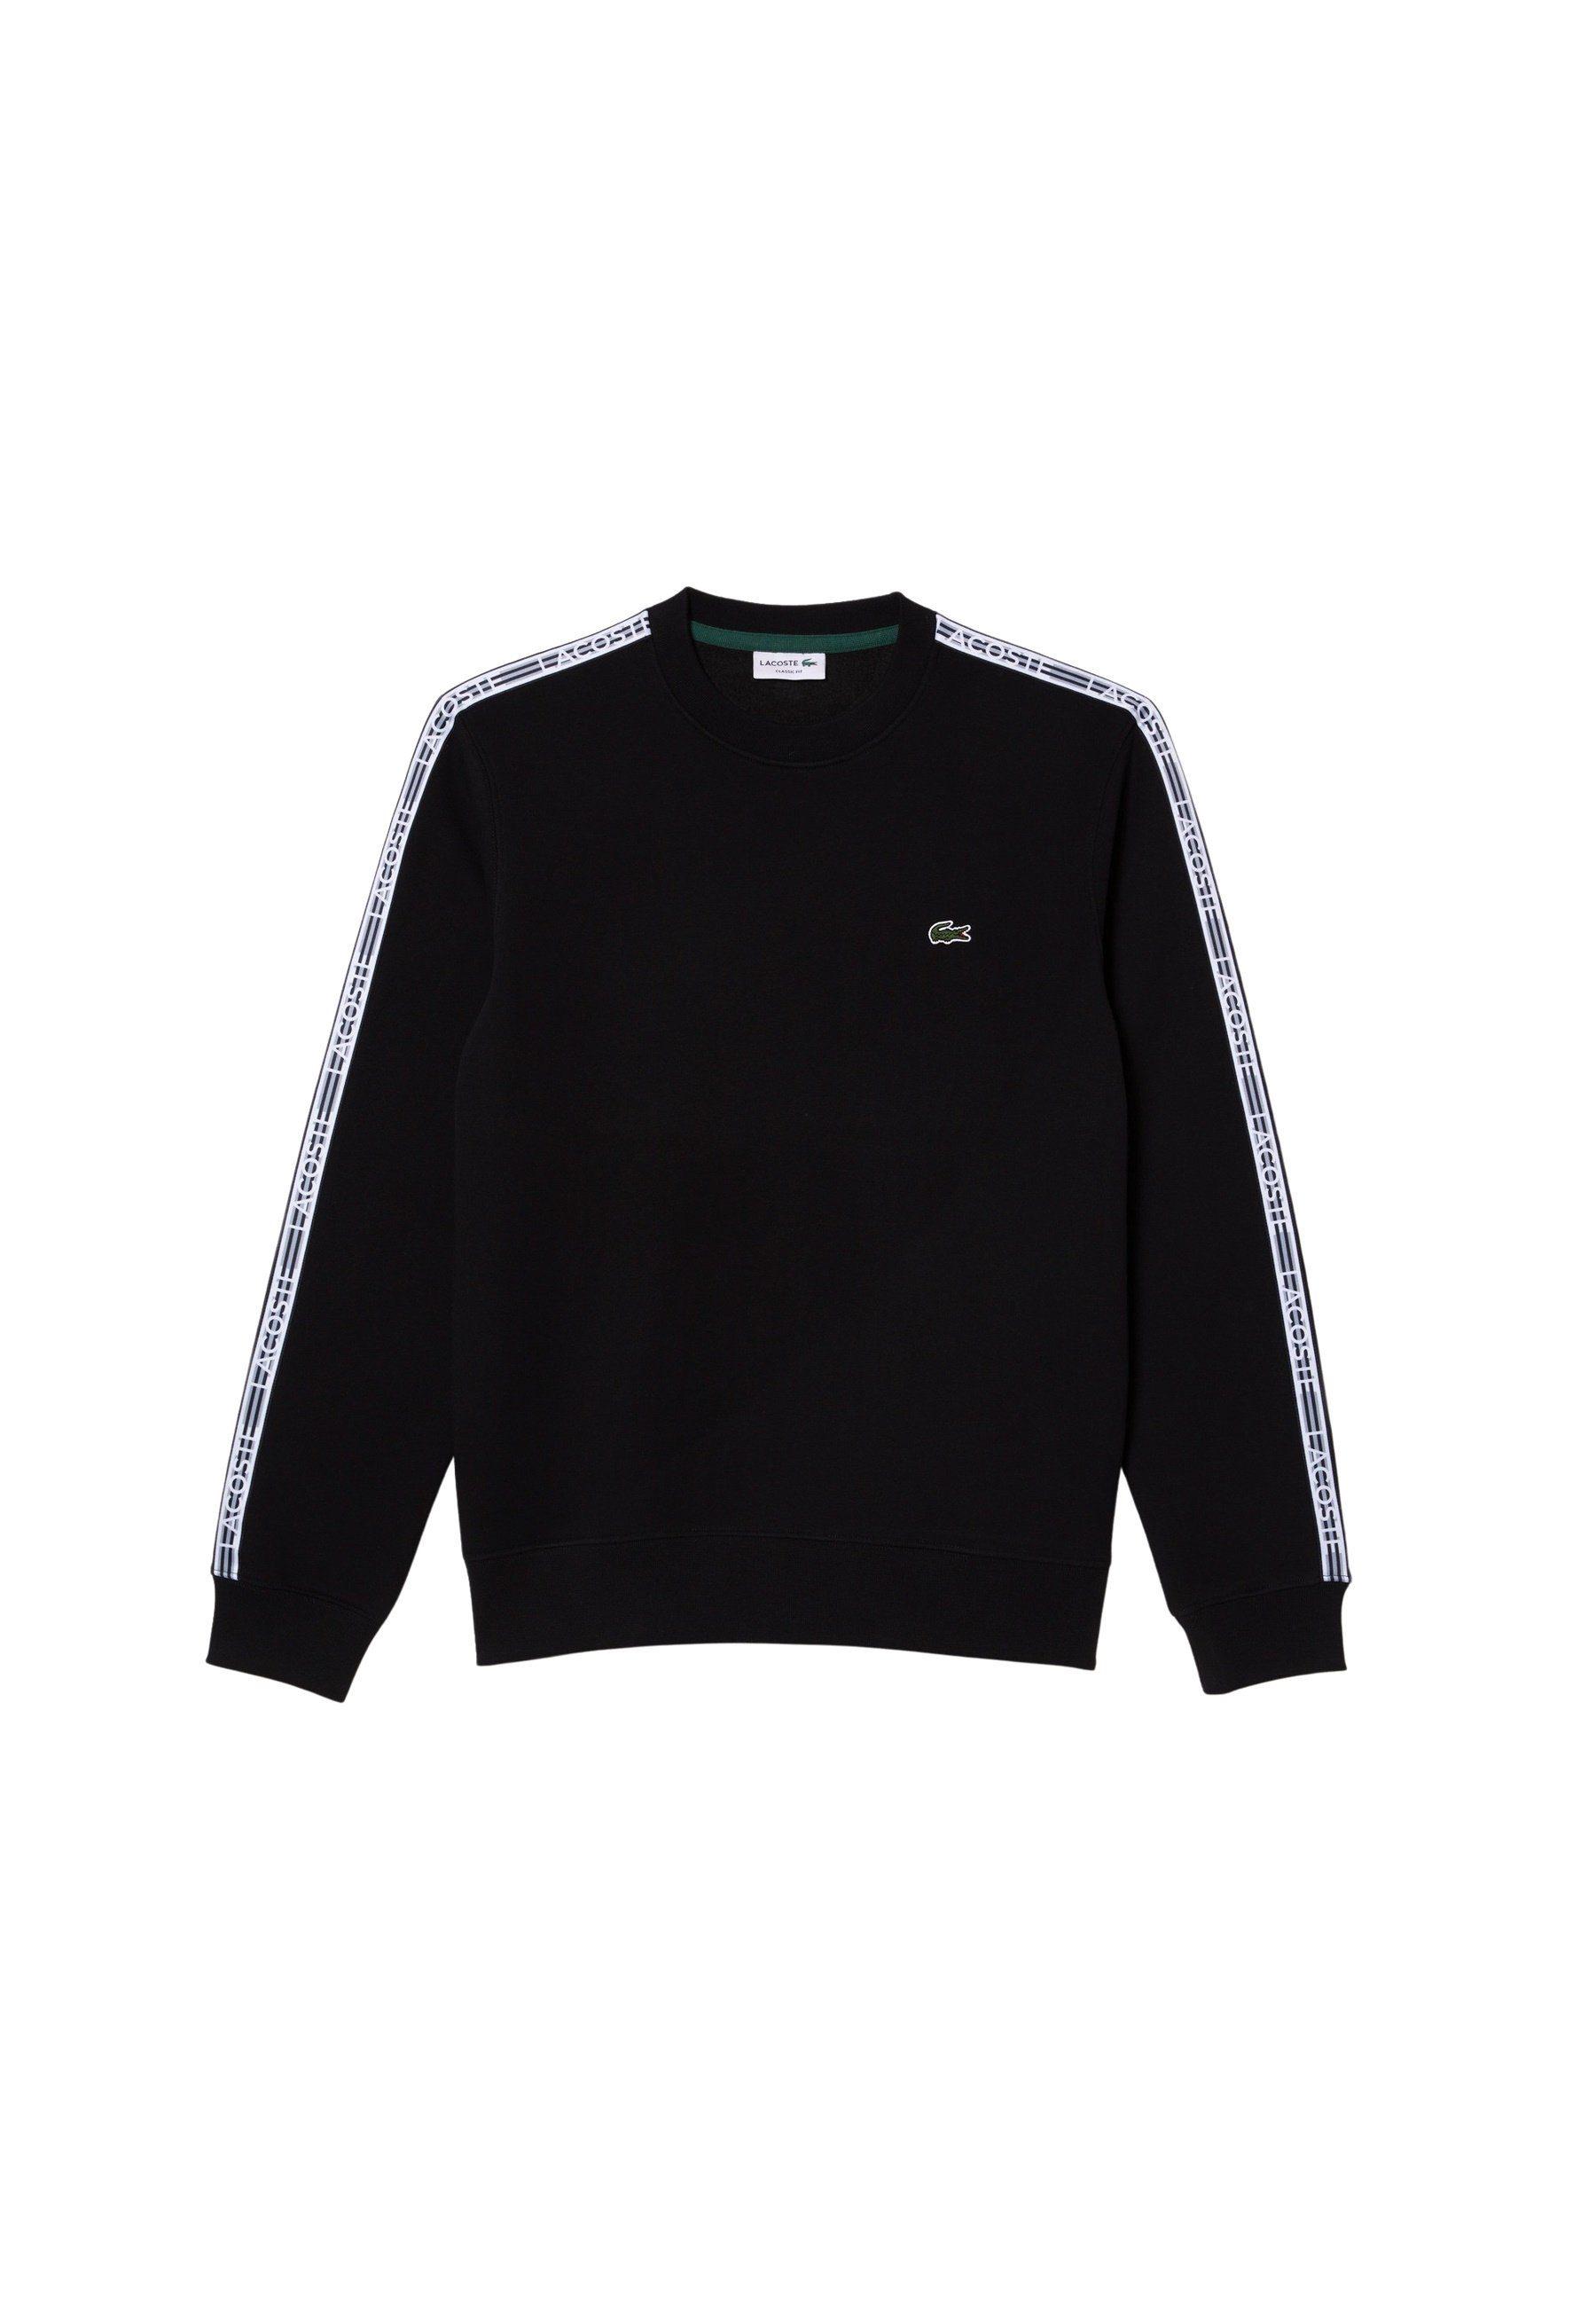 Lacoste Sweatshirt Pullover Sweatshirt mit Logostreifen schwarz (15)